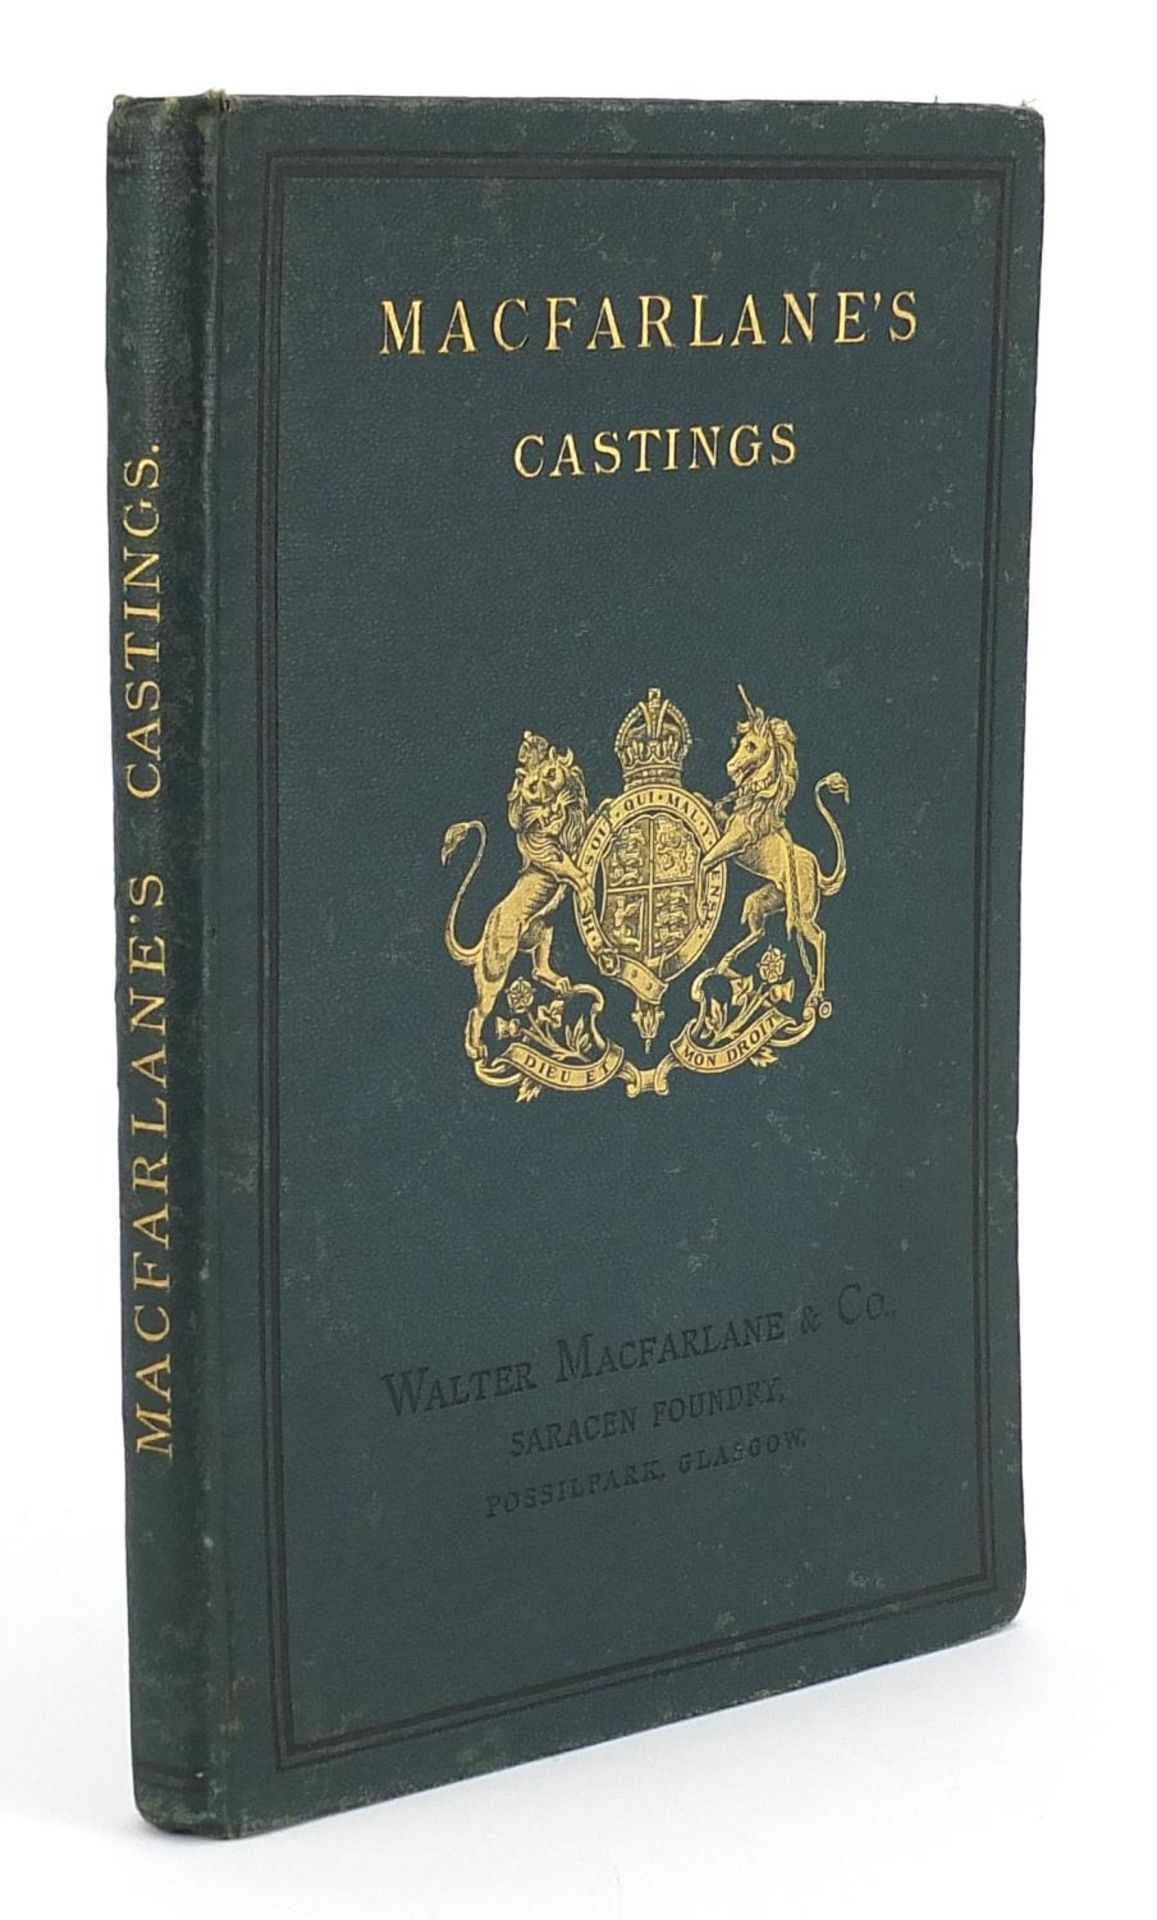 Macfarlane's Castings, hardback book, Walter Macfarlane & Co